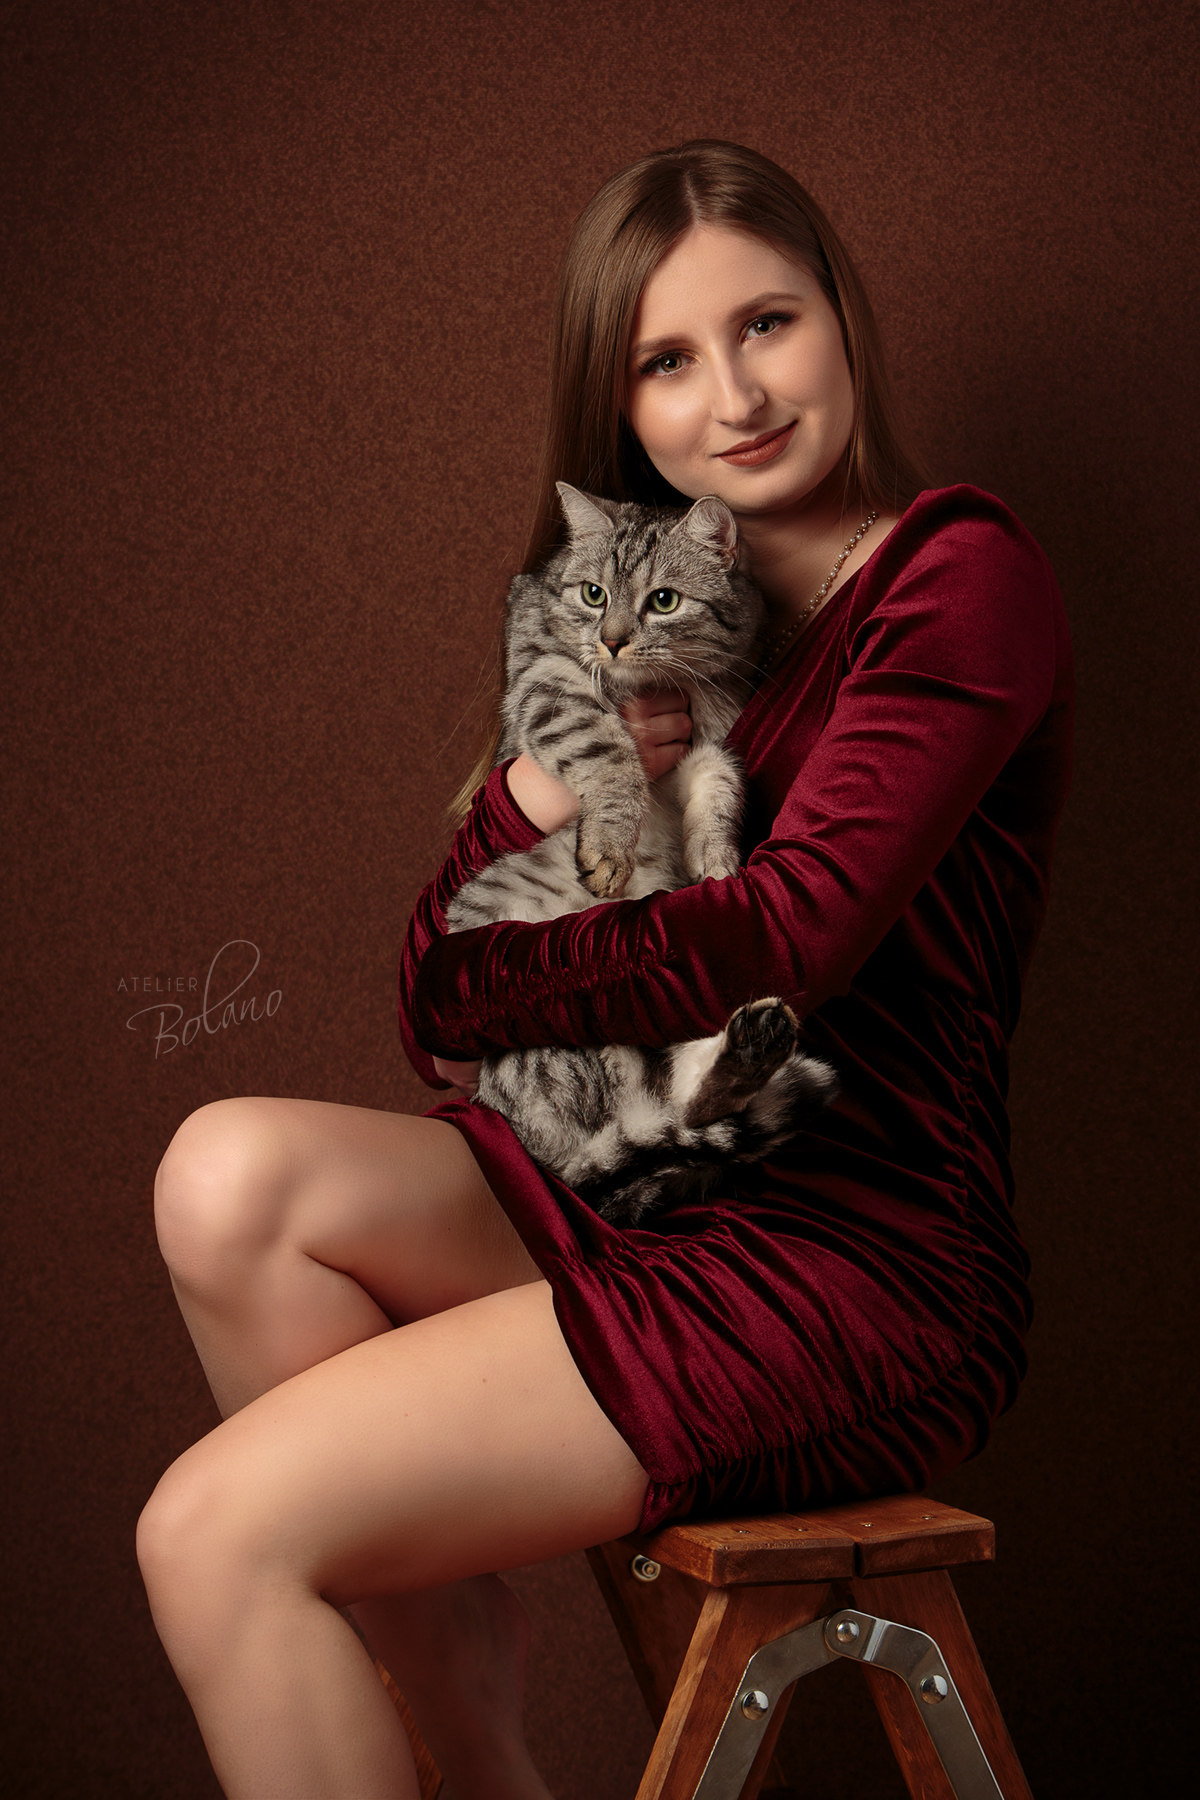 Dziewczyna z kotem